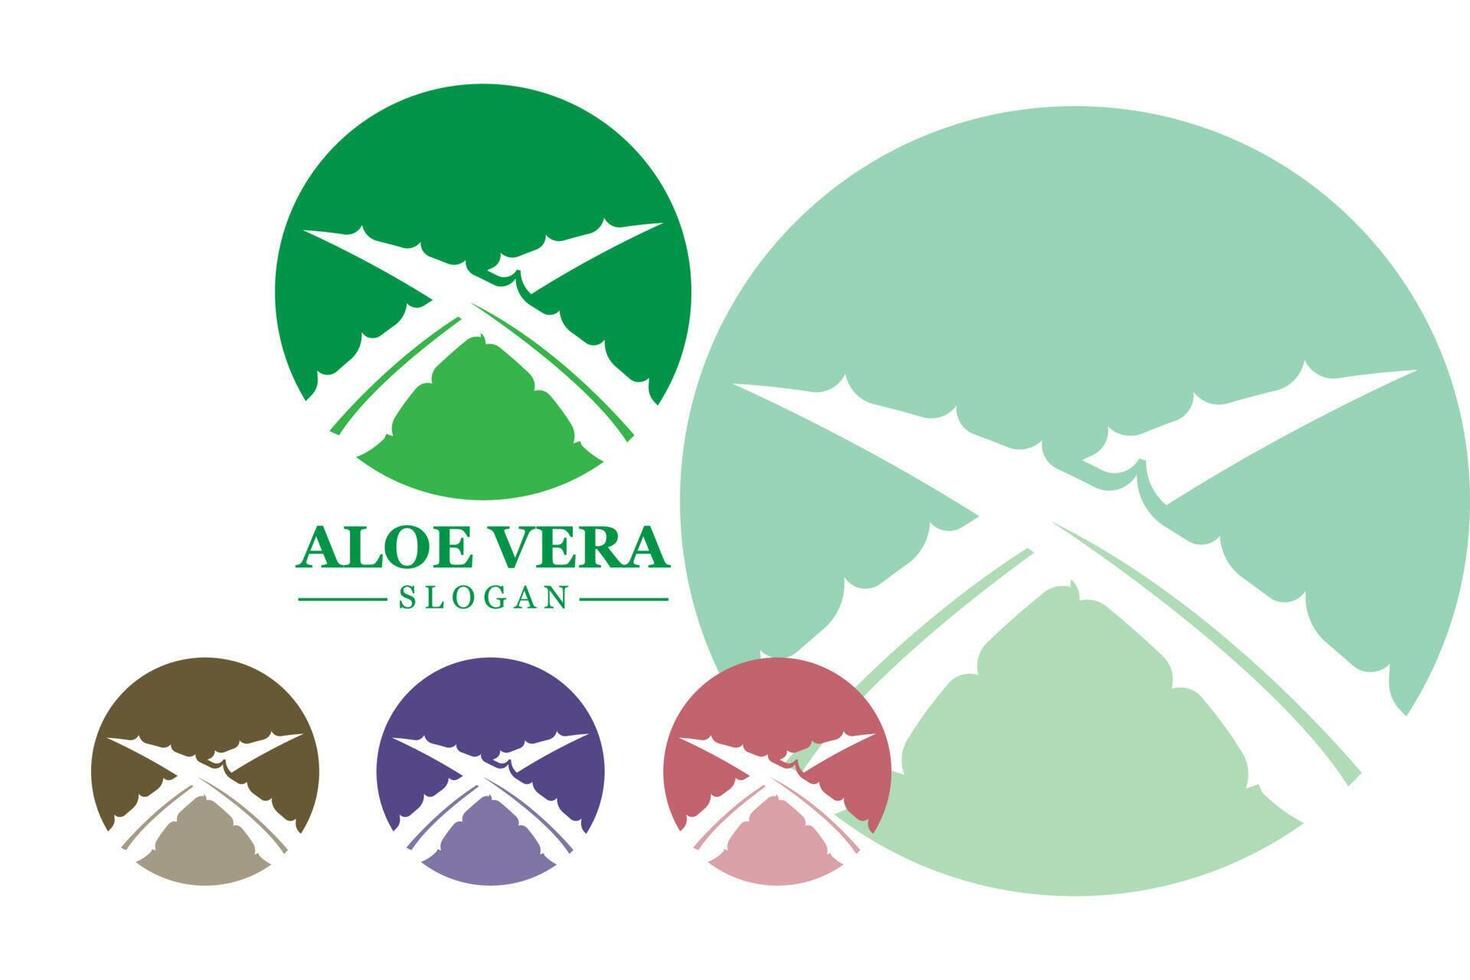 plante verte aloe vera logo vecteur icône symbole de nombreux avantages